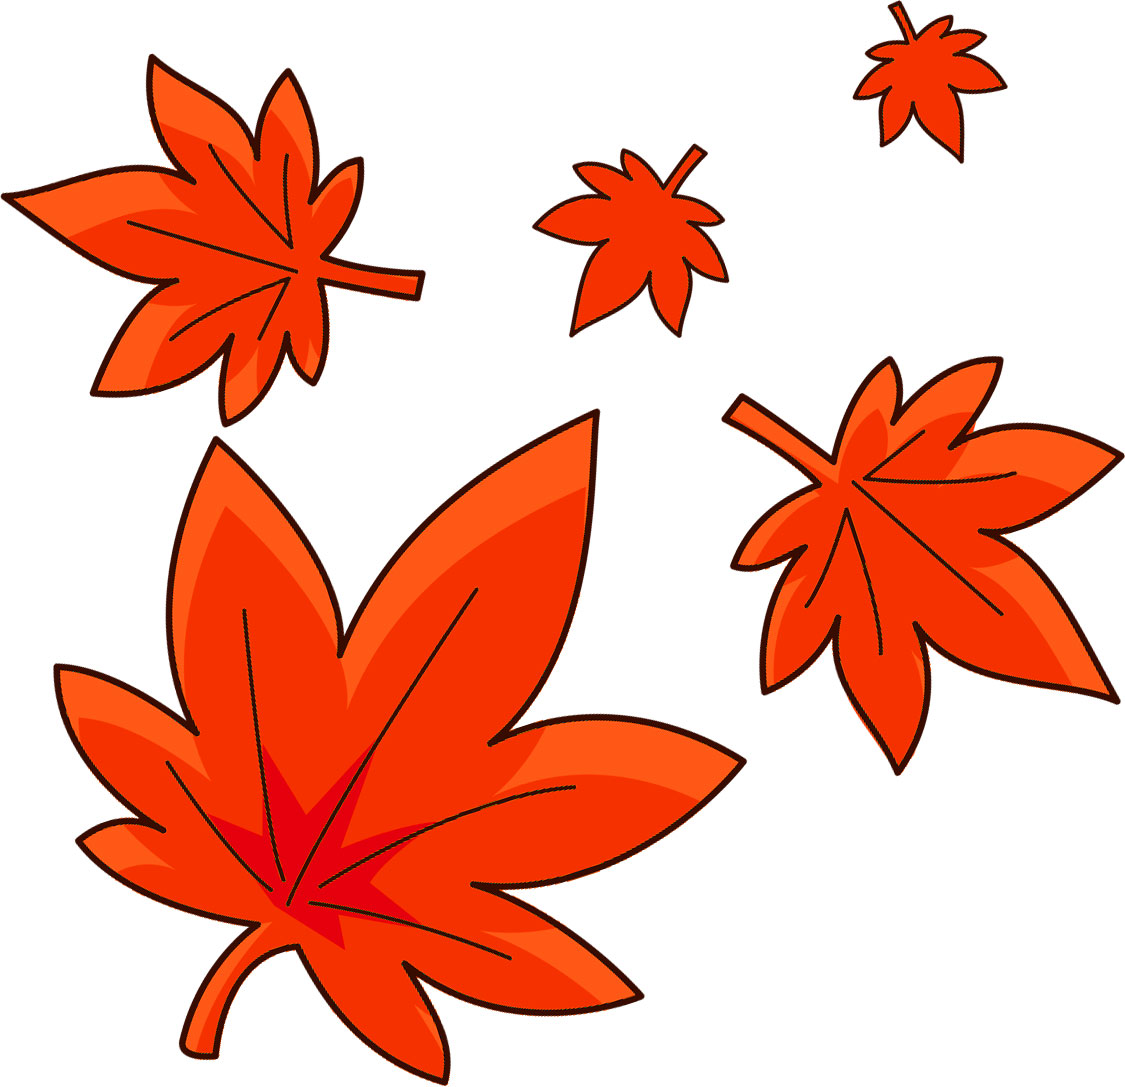 秋のイラストno 391 カエデの葉っぱ 無料のフリー素材集 花鳥風月